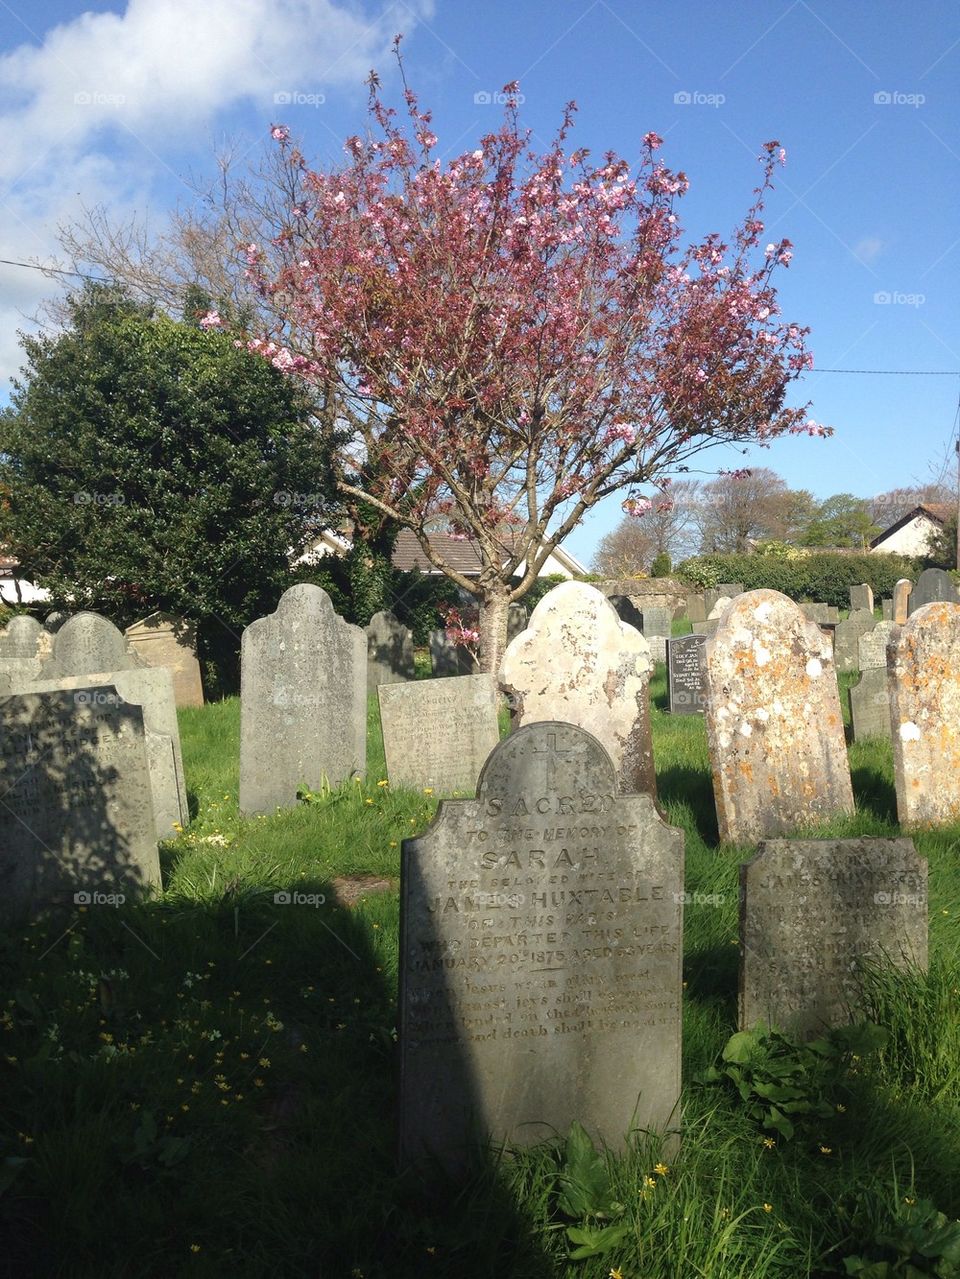 Devon Graveyard